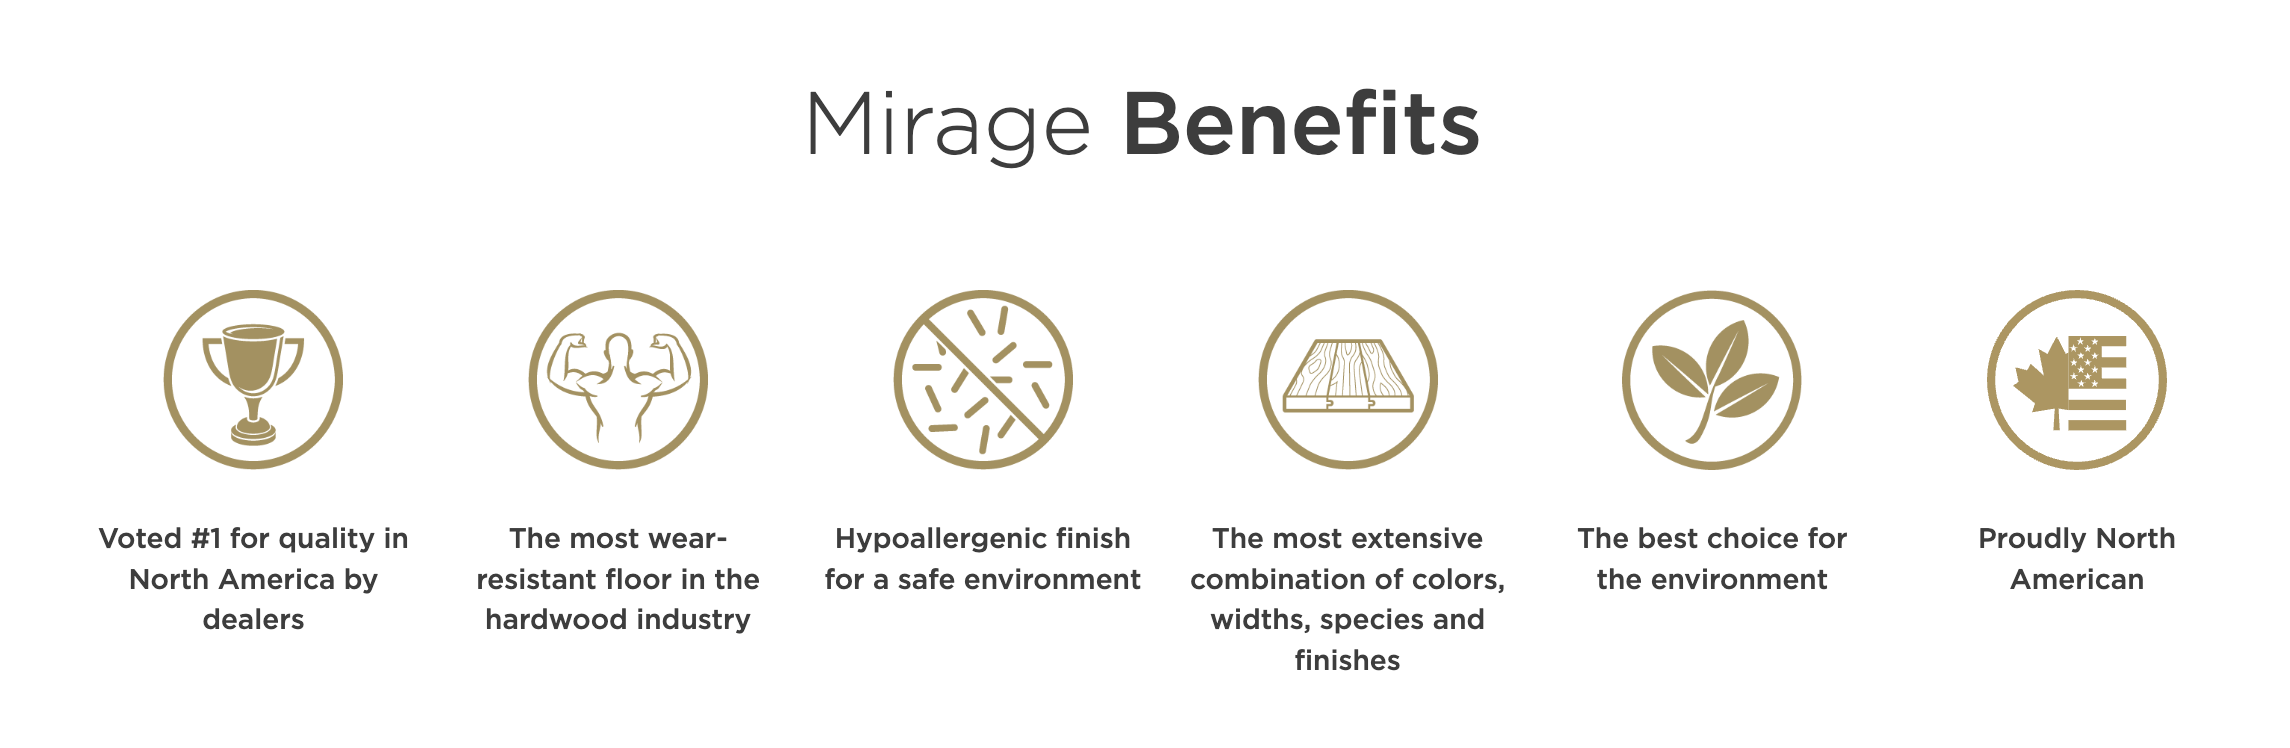 Mirage Benefits